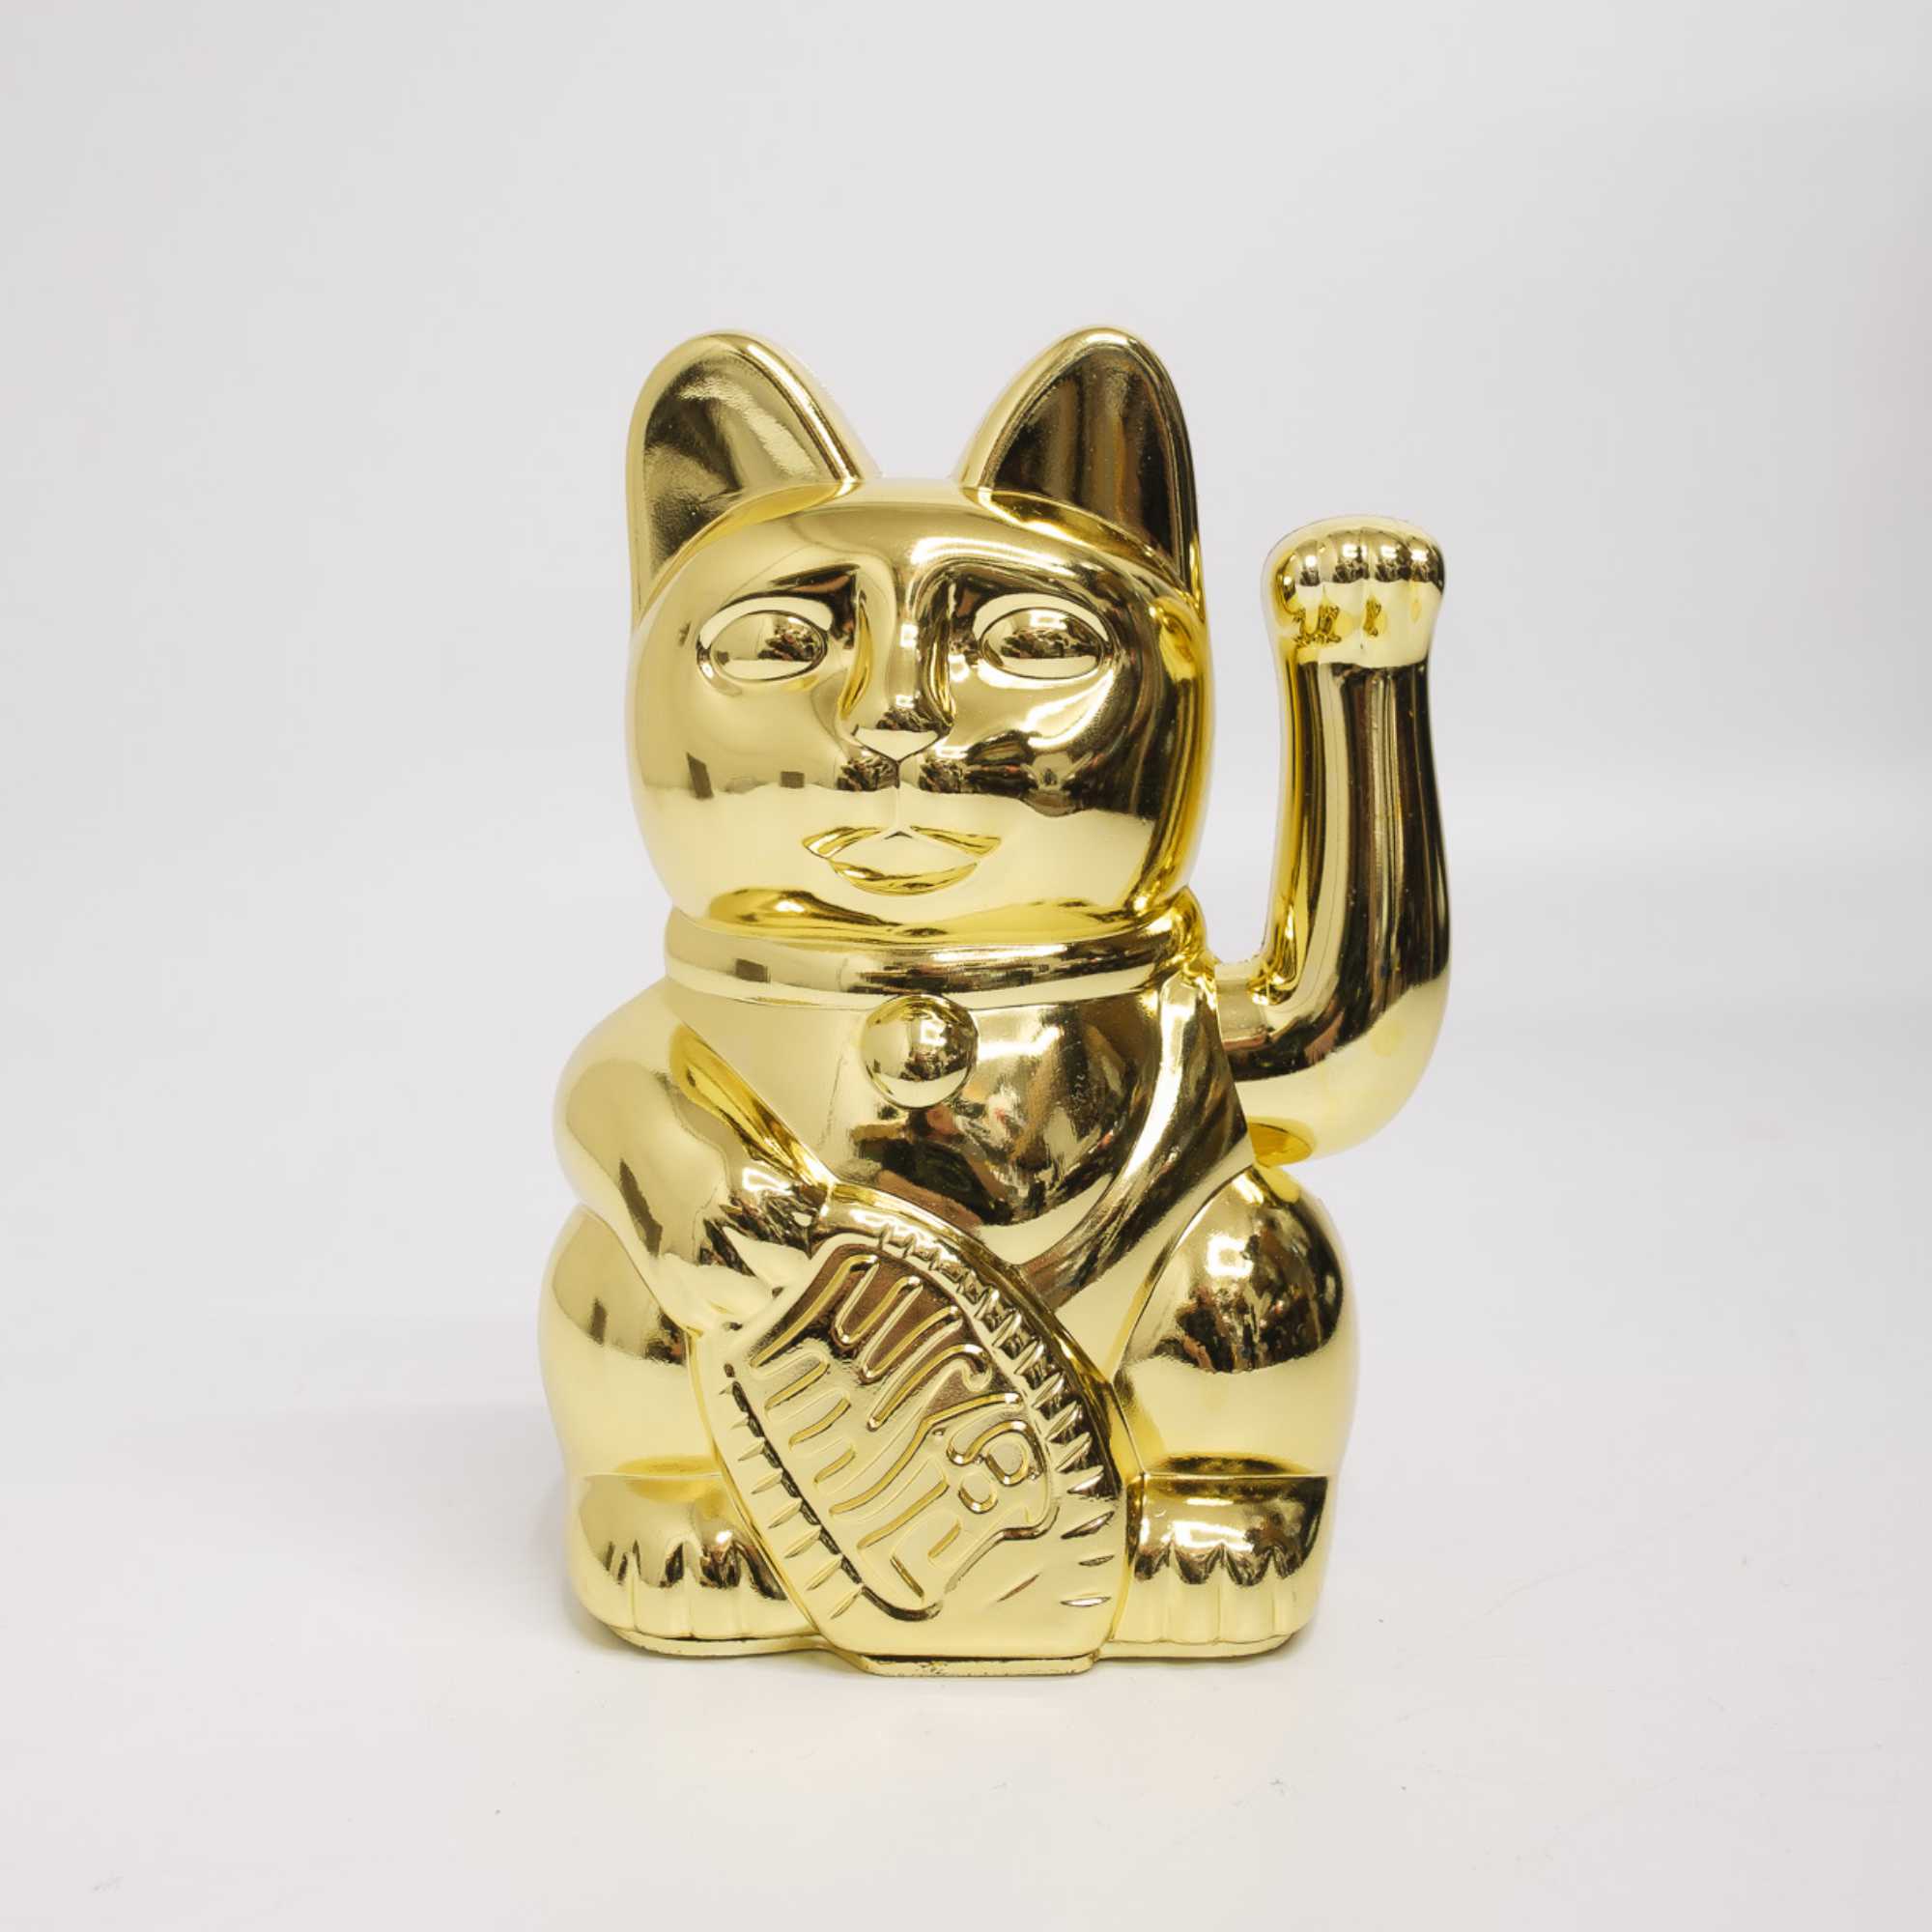 ex-display | Donkey Lucky Cat, Shiny Gold